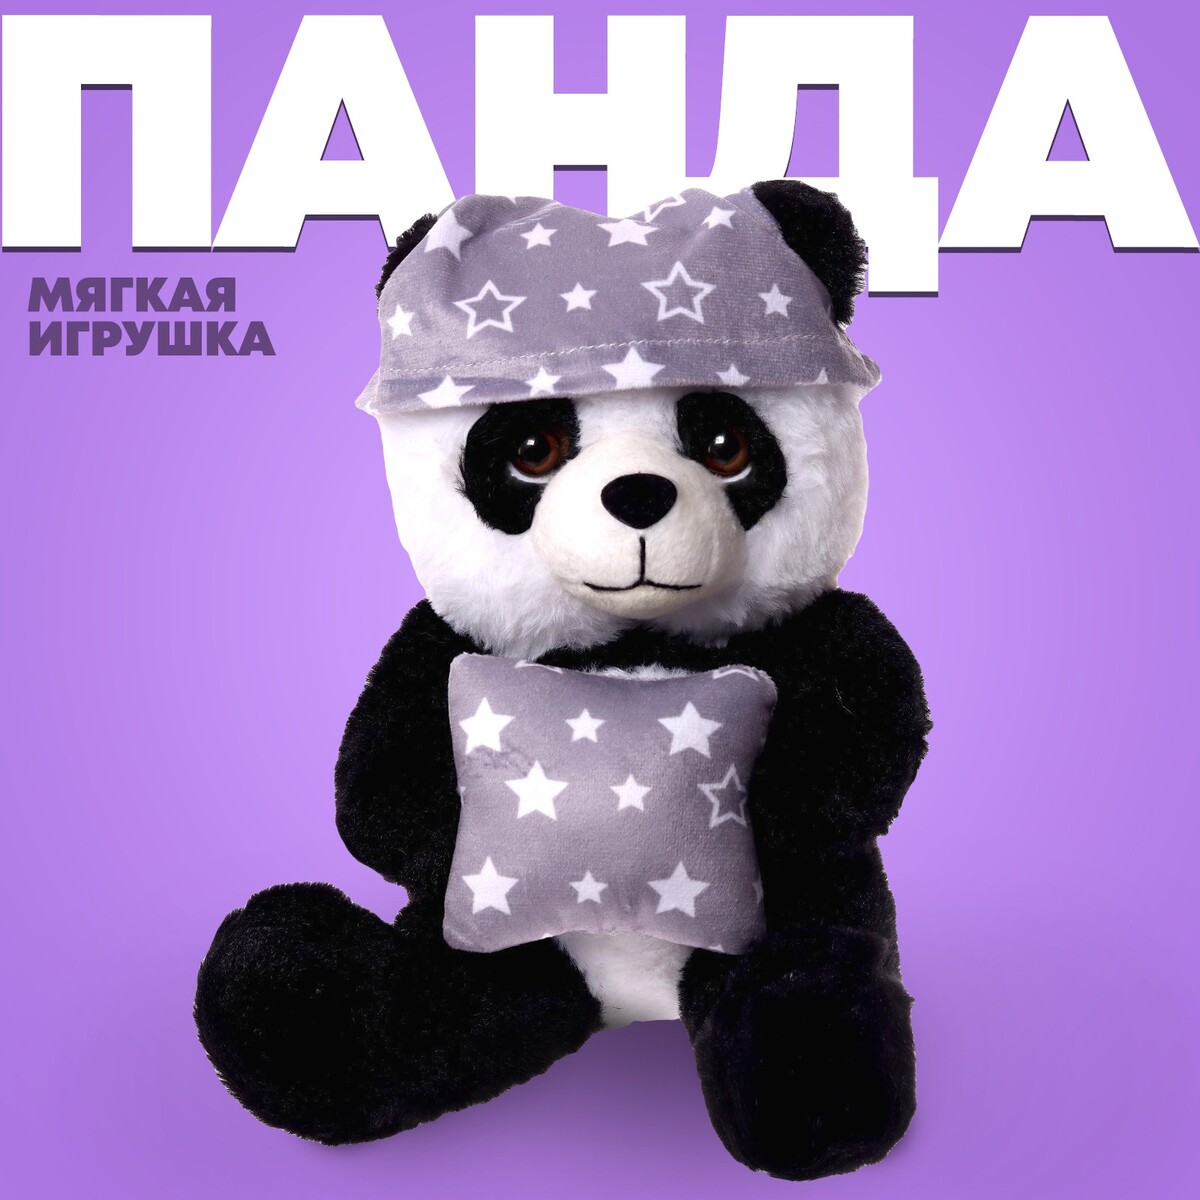 Мягкая игрушка панда мягкая игрушка fluffy heart панда 25 см mt mrt081910 25